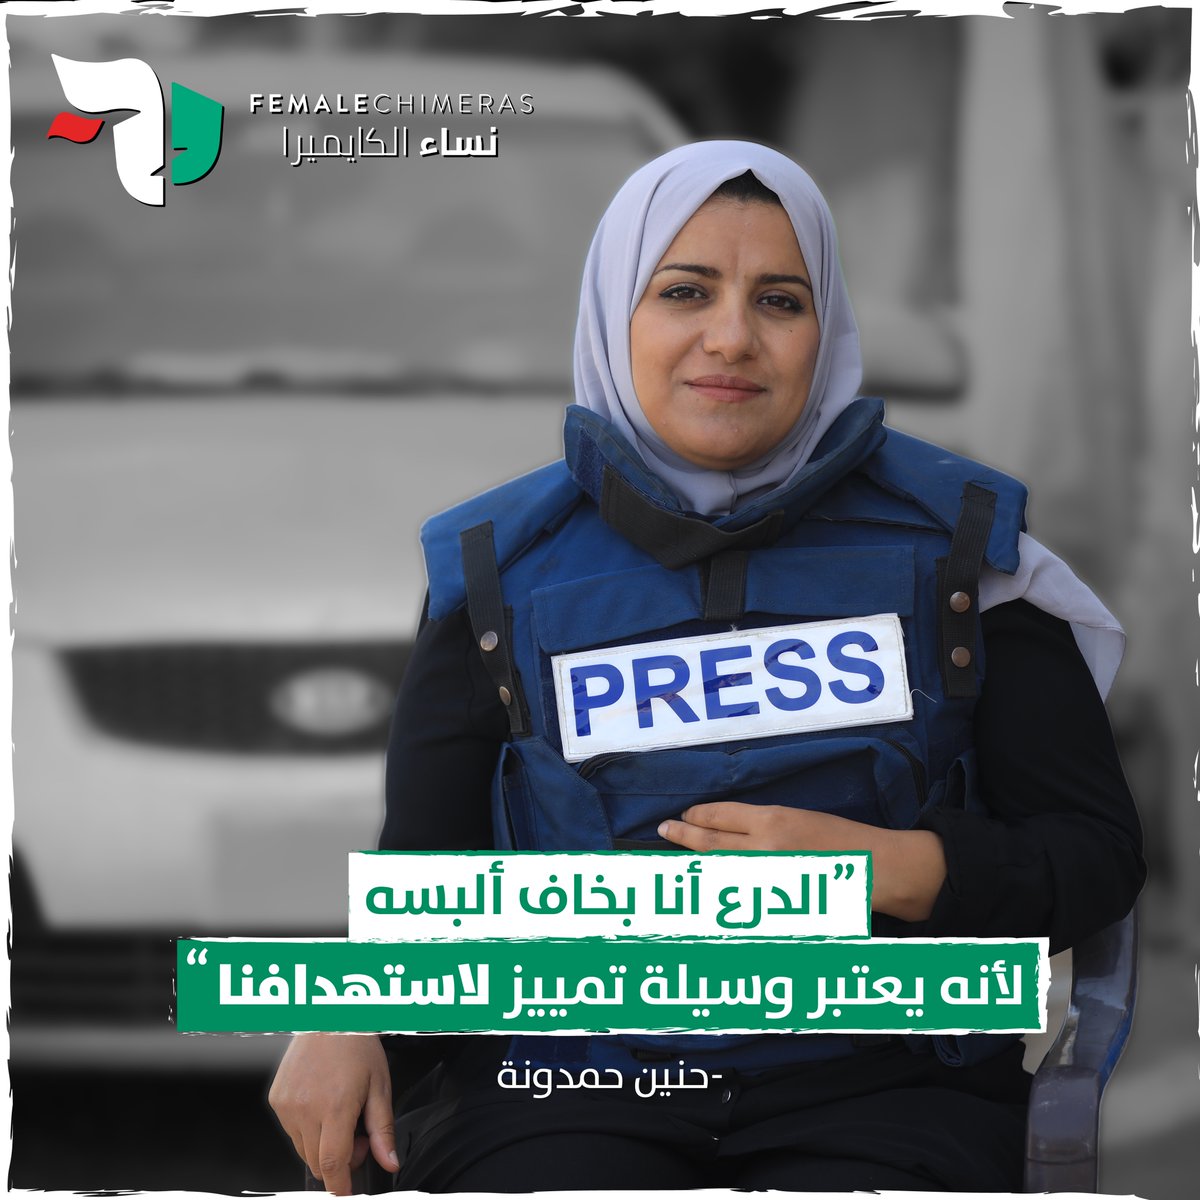 حنين، صحفية من القطاع، كادت أن تفقد حياتها في هجوم استهدف خيمة الصحفيين بساحة مشفى شهداء الأقصى مطلع الشهر الماضي. غداً، تشاركنا حنين قصتها وتجربتها ومخاوفها في زمن يُستخدم فيه درع الصحافة كوسيلة للاستهداف. #WorldPressFreedomDay #PressFreedom #Gaza #Palestine @Qaribmedias